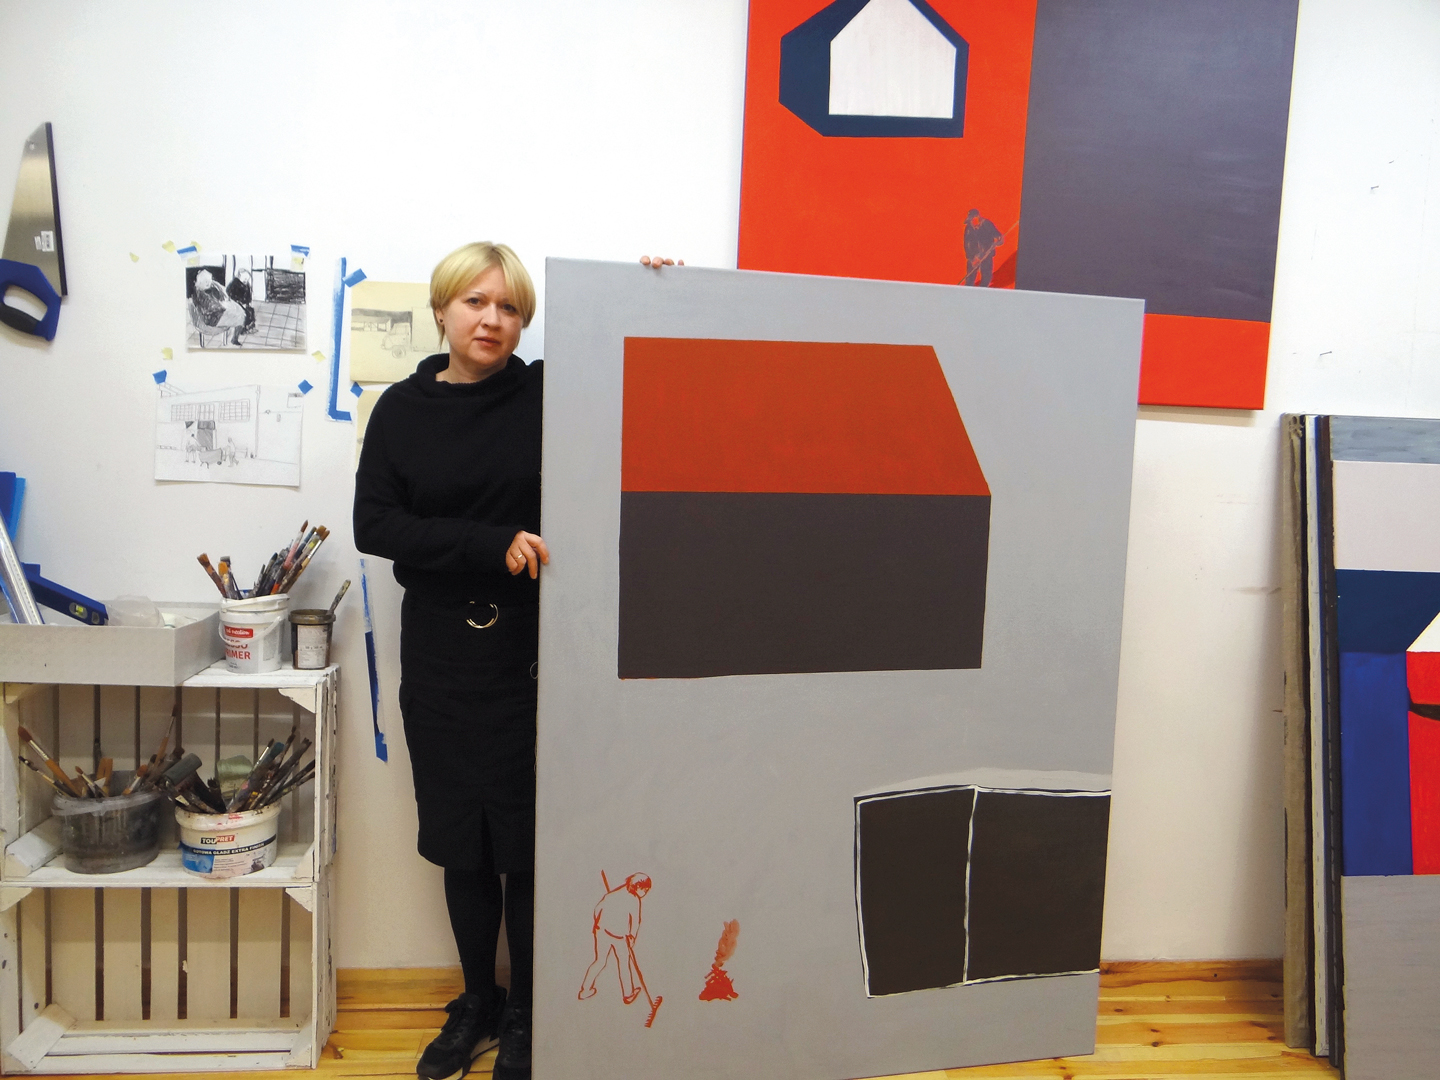 Artystka Joanna Mrozowska w swojej pracowni.  Ubrana jest na czarno, blondynka, stoi obok obrazu, który jest jej wzrostu. Na obrazie symbolicznie malowany domek z czerwonym dachem. Po lewej stronie szkicowo malowana postać grabiąca liście.